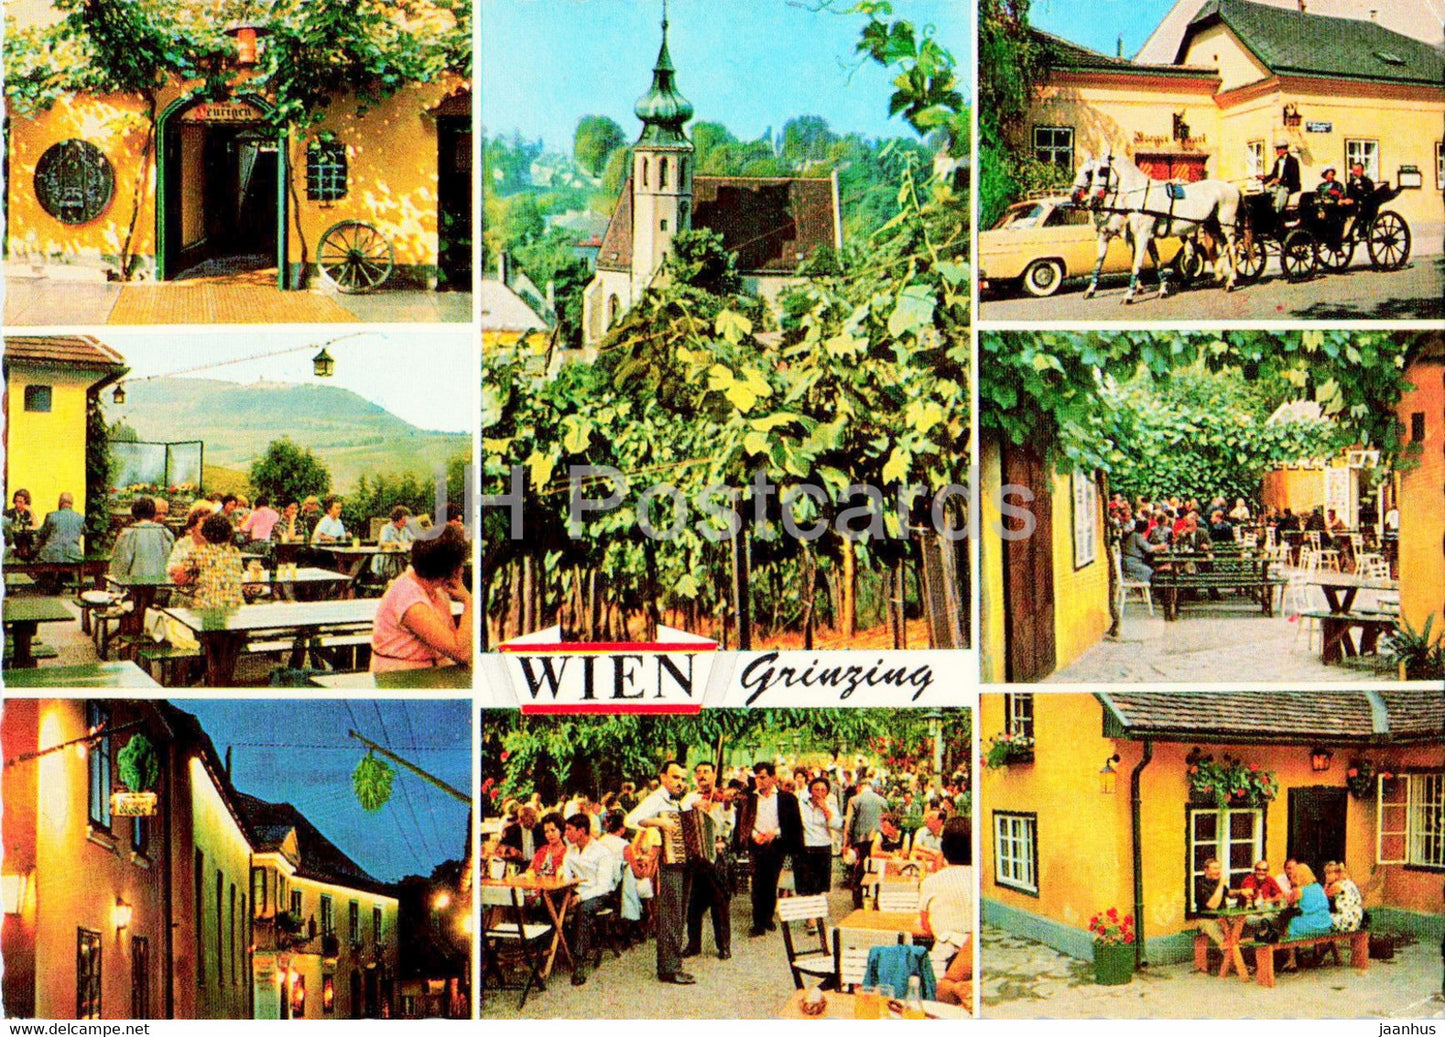 Wien - Vienna - Grinzing - Weltbekannte Weinausschank - Wine Tavern - horse carriage - Austria - unused - JH Postcards